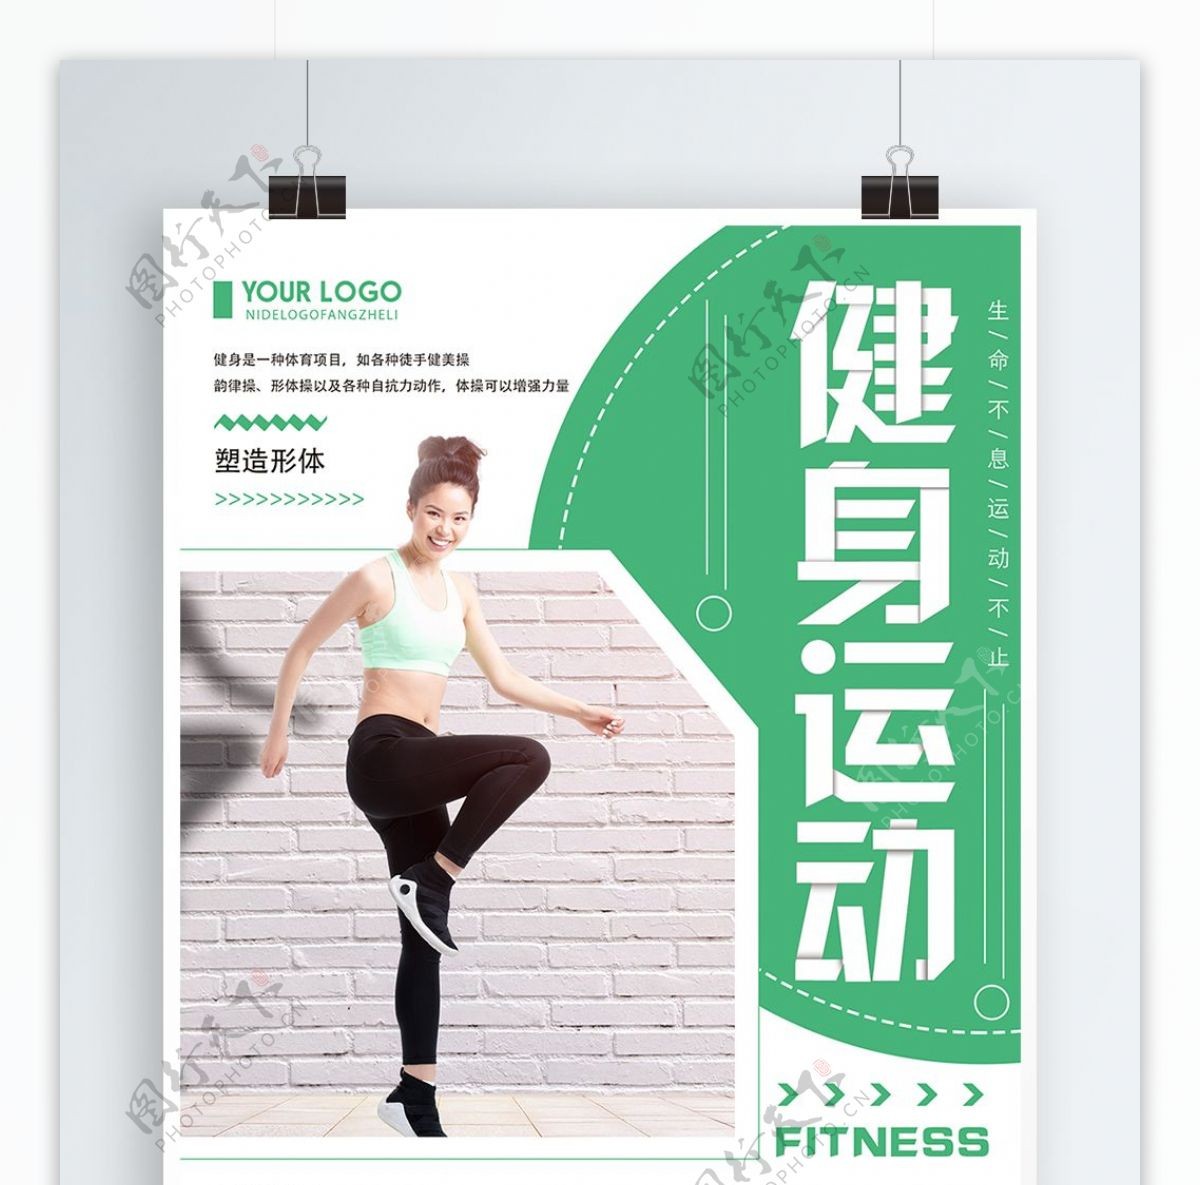 绿色清新简约健身运动宣传海报